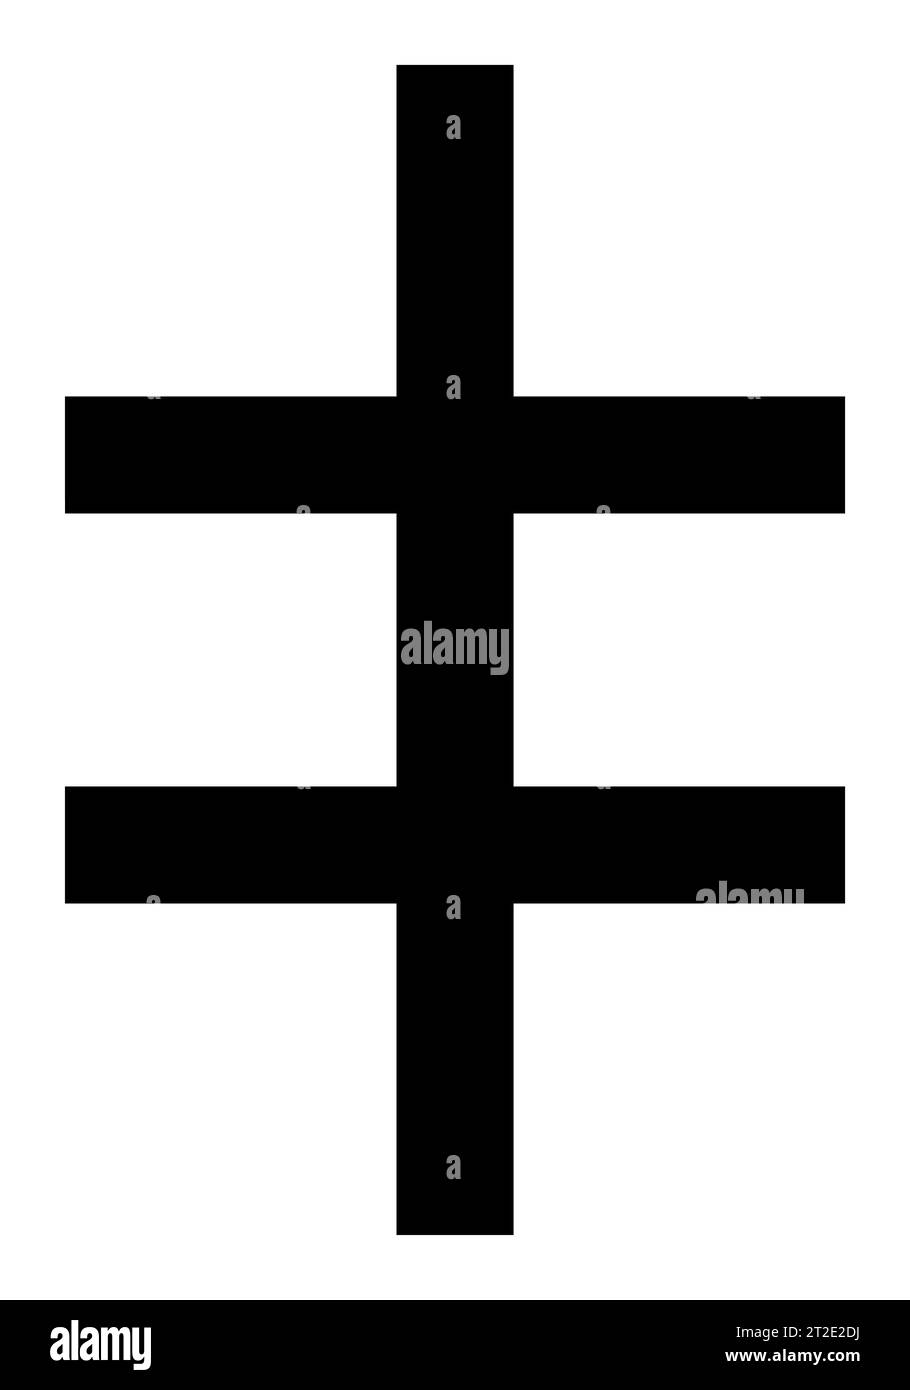 Croix de Lorraine (Cross of Lorraine), Djibouti, East Africa Stock Photo -  Alamy